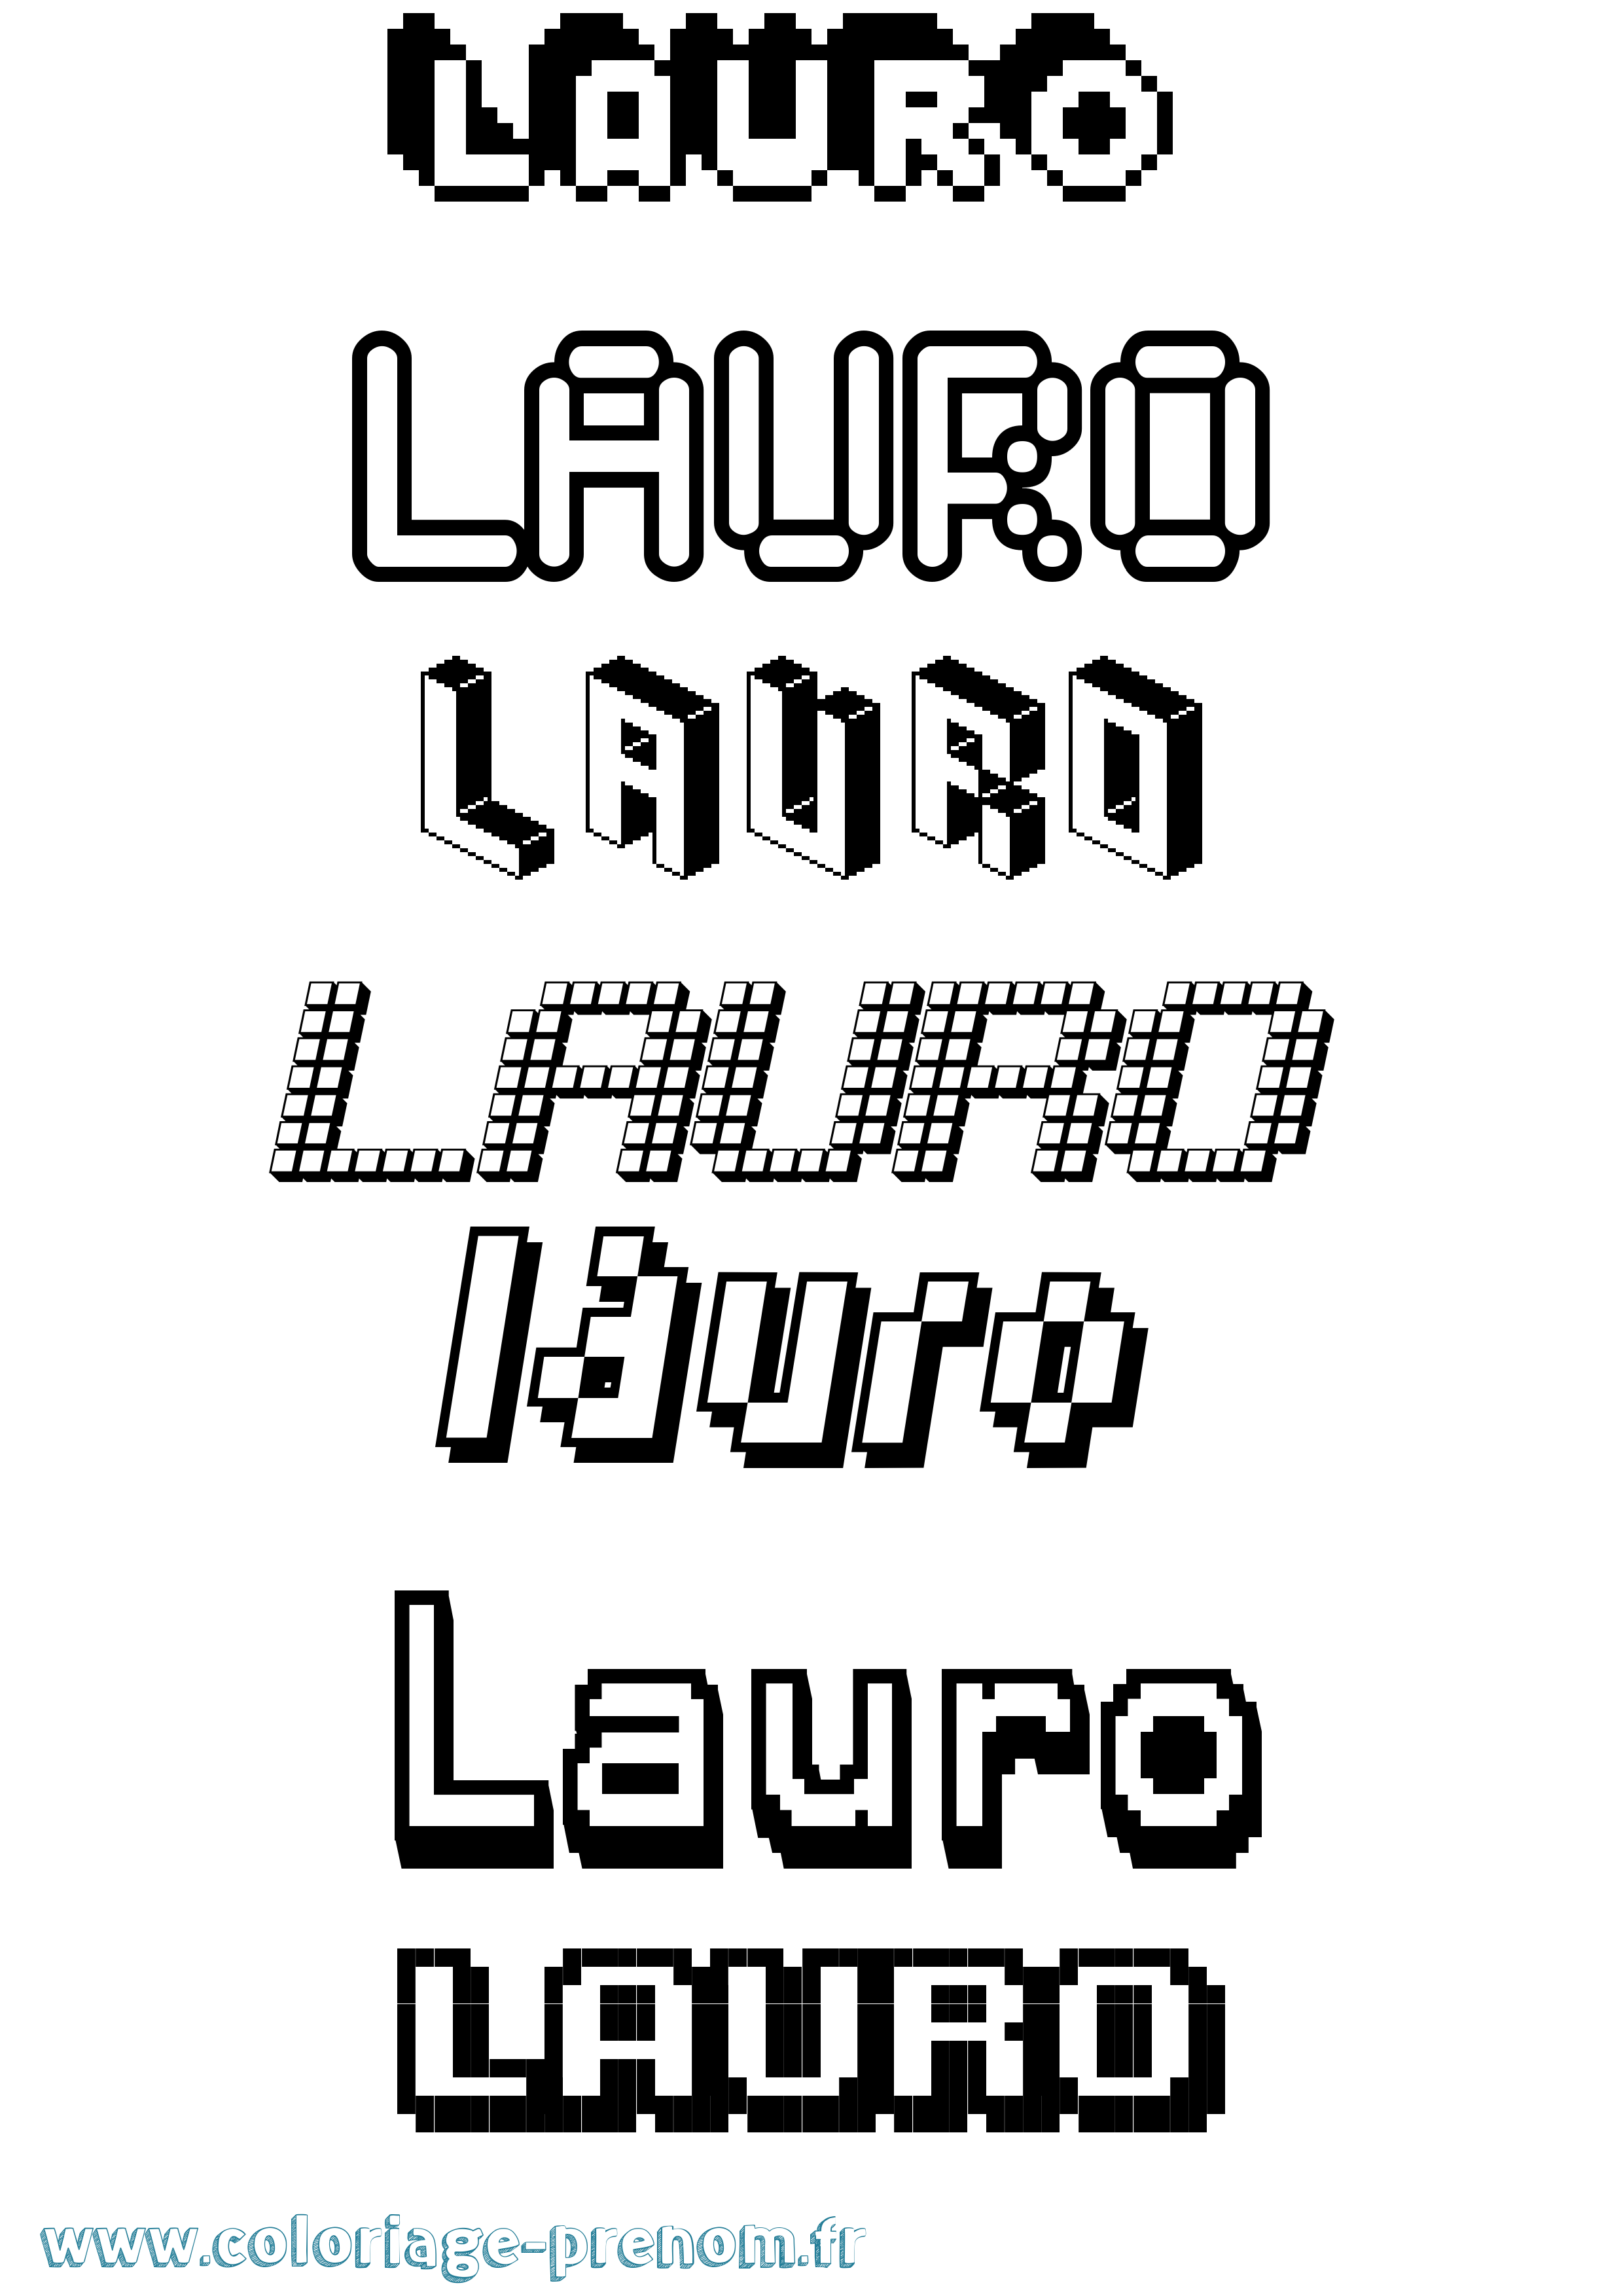 Coloriage prénom Lauro Pixel